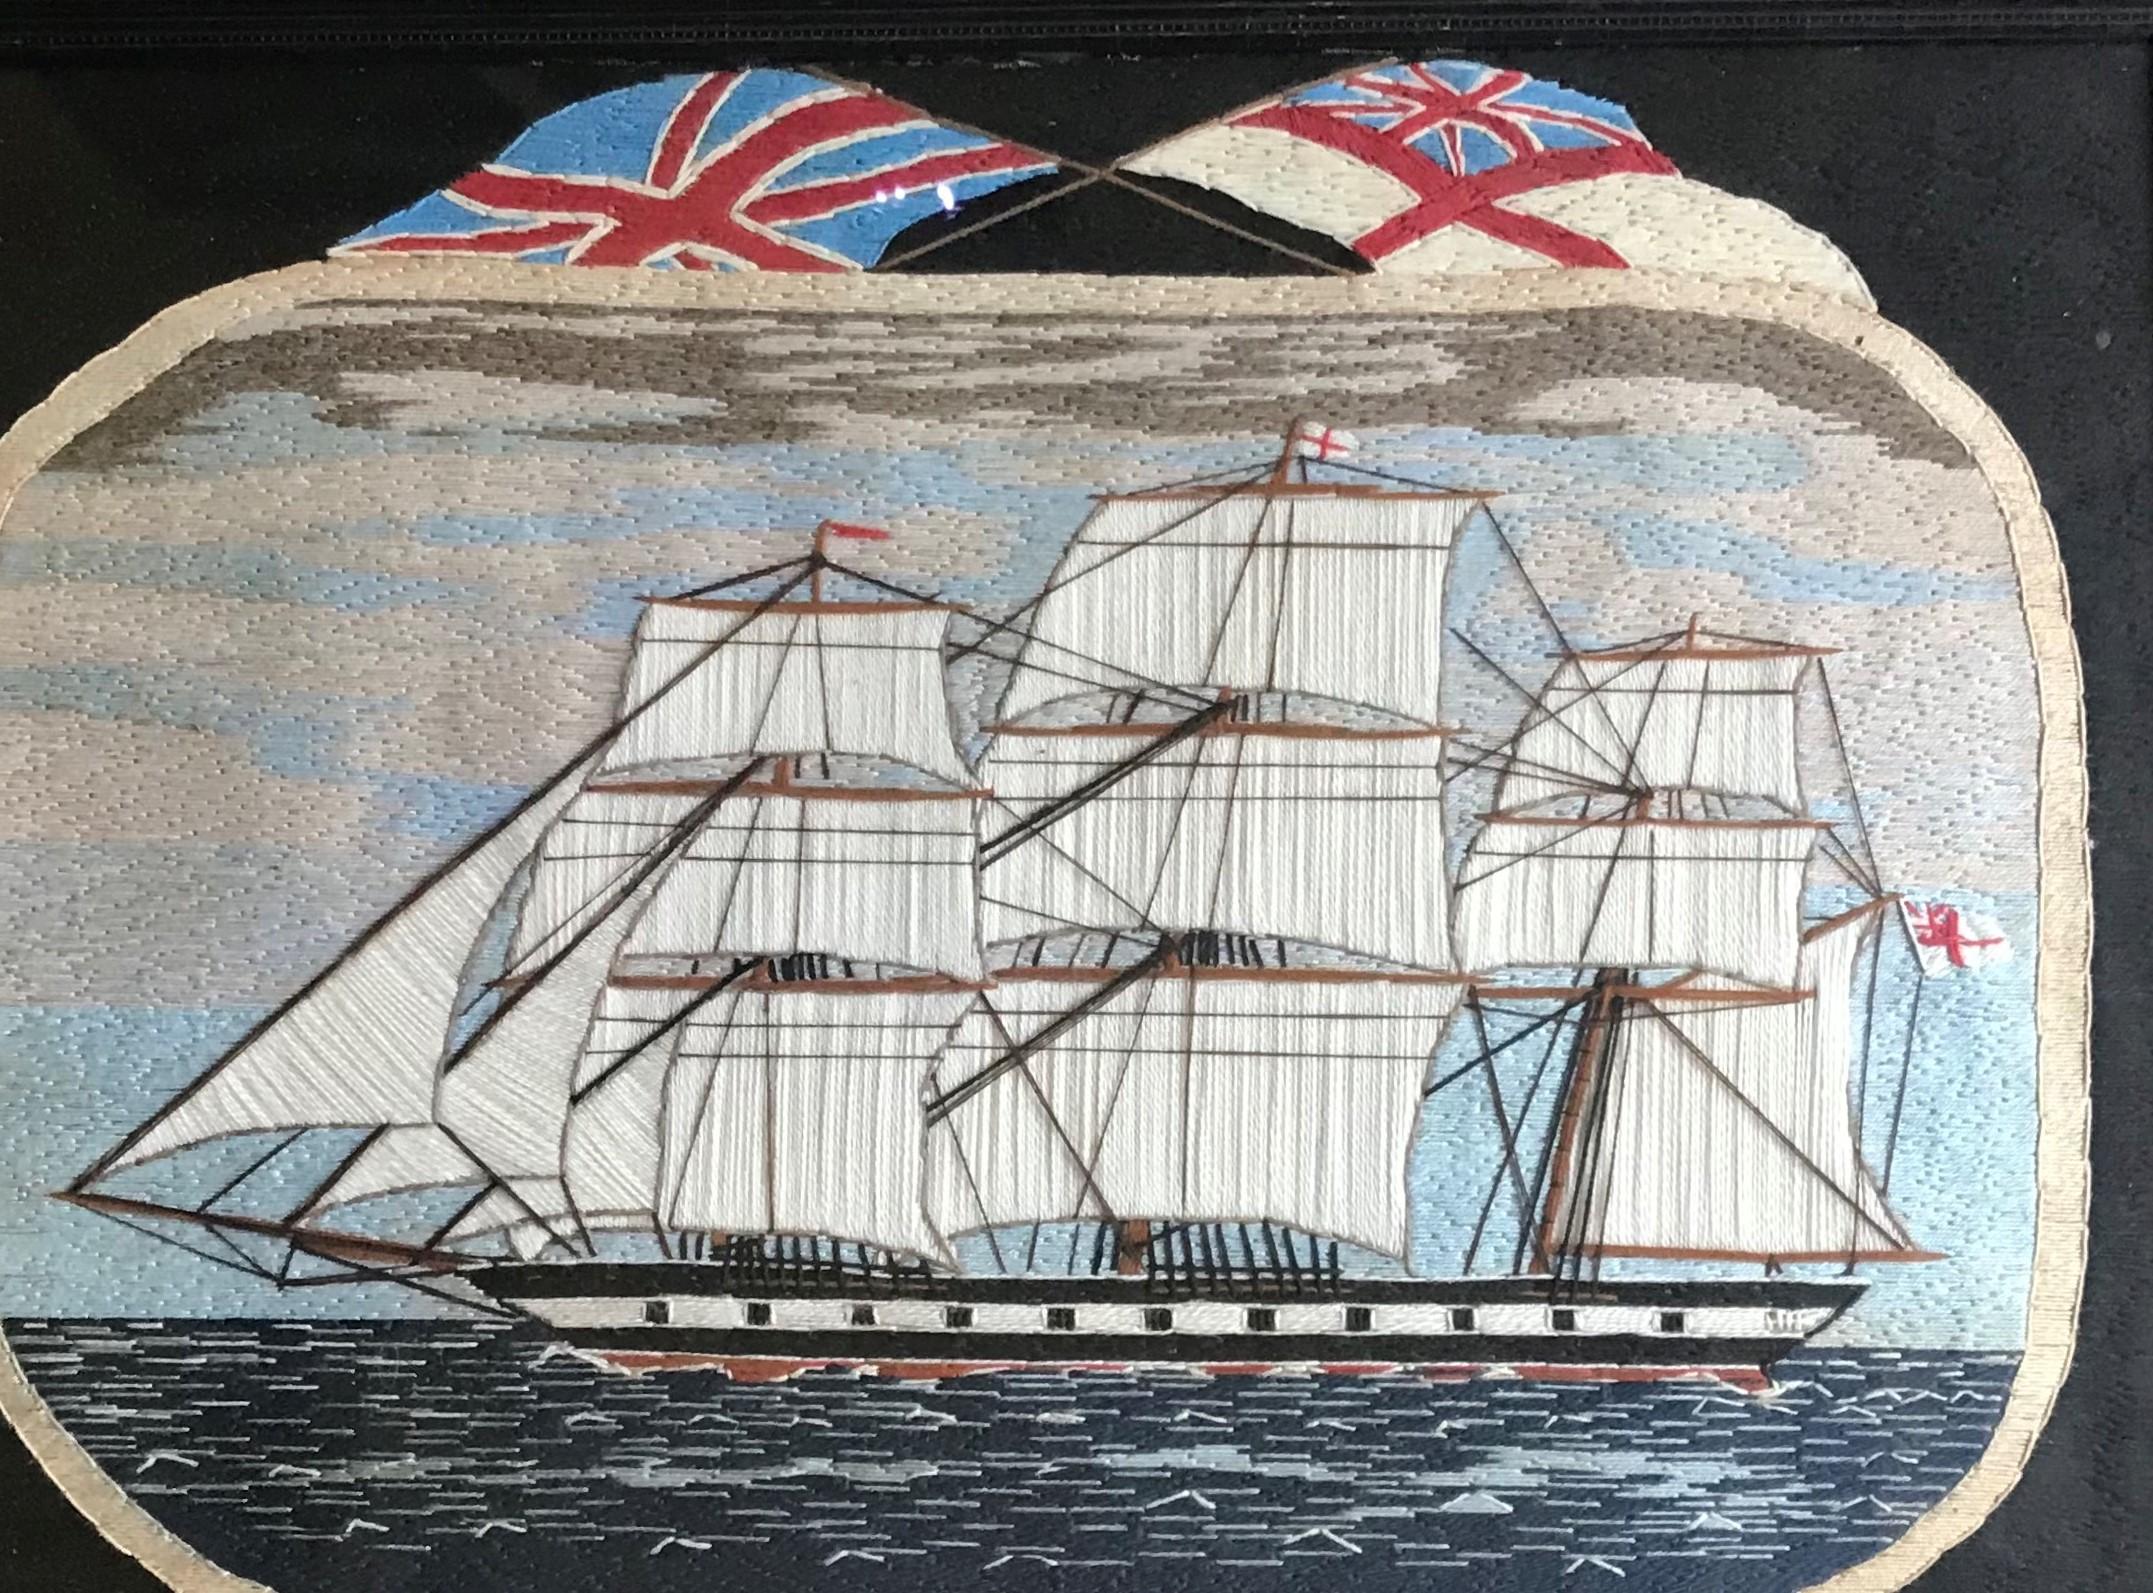 HMS Liverpool Woolie, 19ème siècle 
Fabriqué en 1860 
Origine britannique, anglaise
Cadre original 